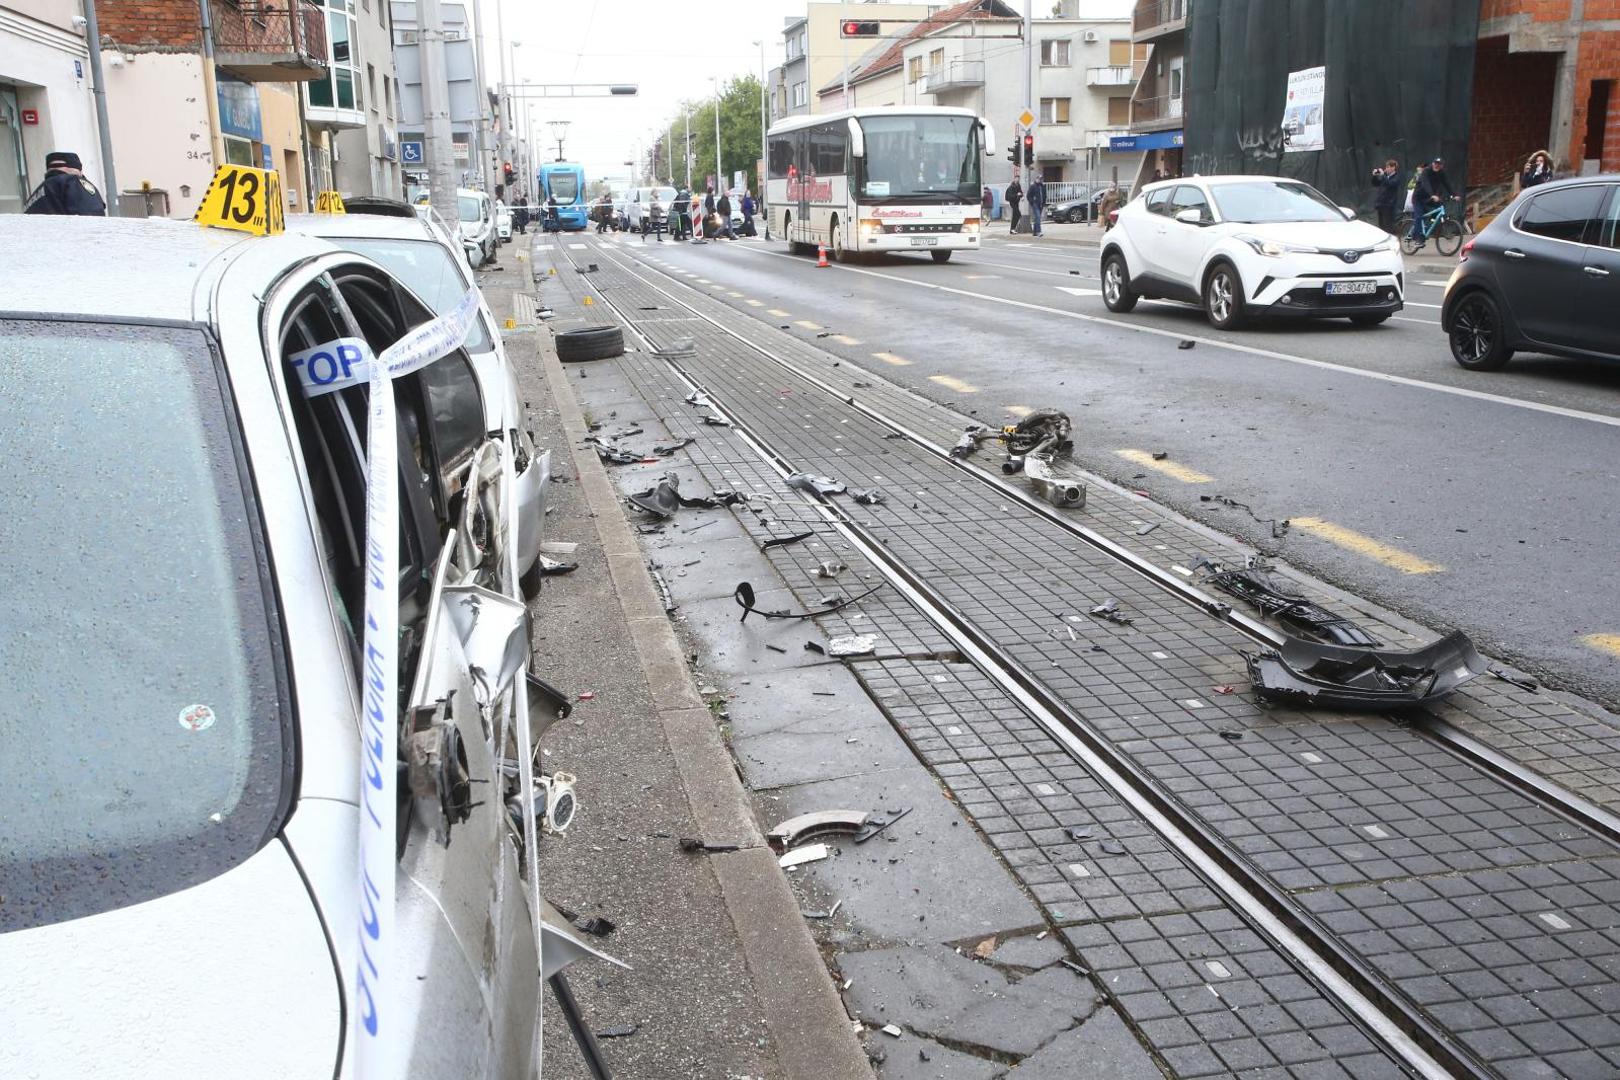 26.04.2021., Zagreb - Prometna nesreca na Aveniji Dubrava gdje je vozac osobnog automobila izgubio kontrolu nad vozilom, udario u nekoliko parkiranih vozila te se prevrnuo na krov. Photo: Matija Habljak/PIXSELL